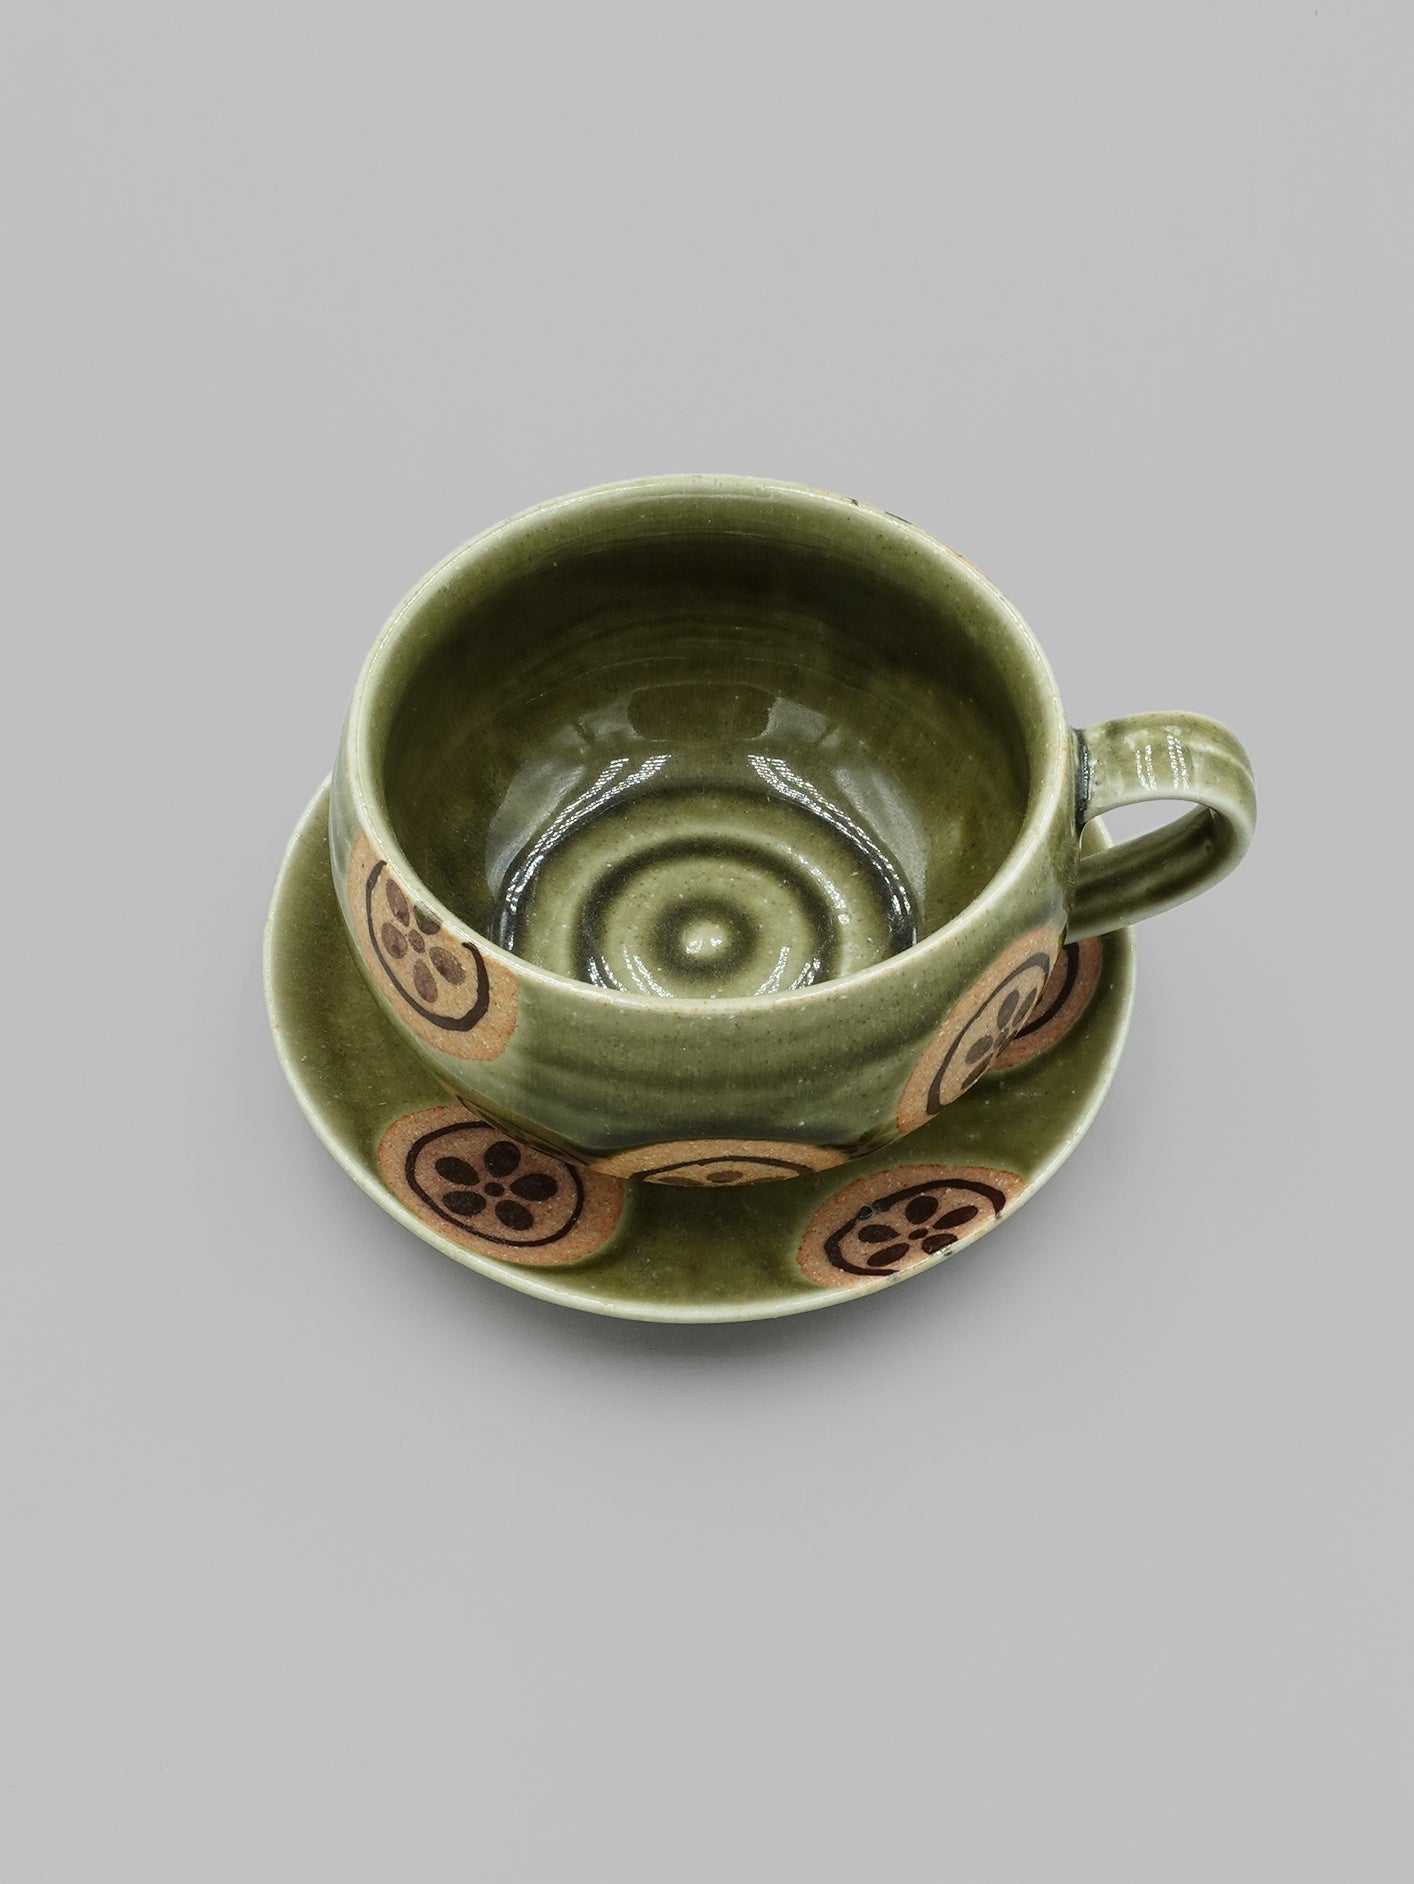 【職人手造】綠花丸紋咖啡杯組